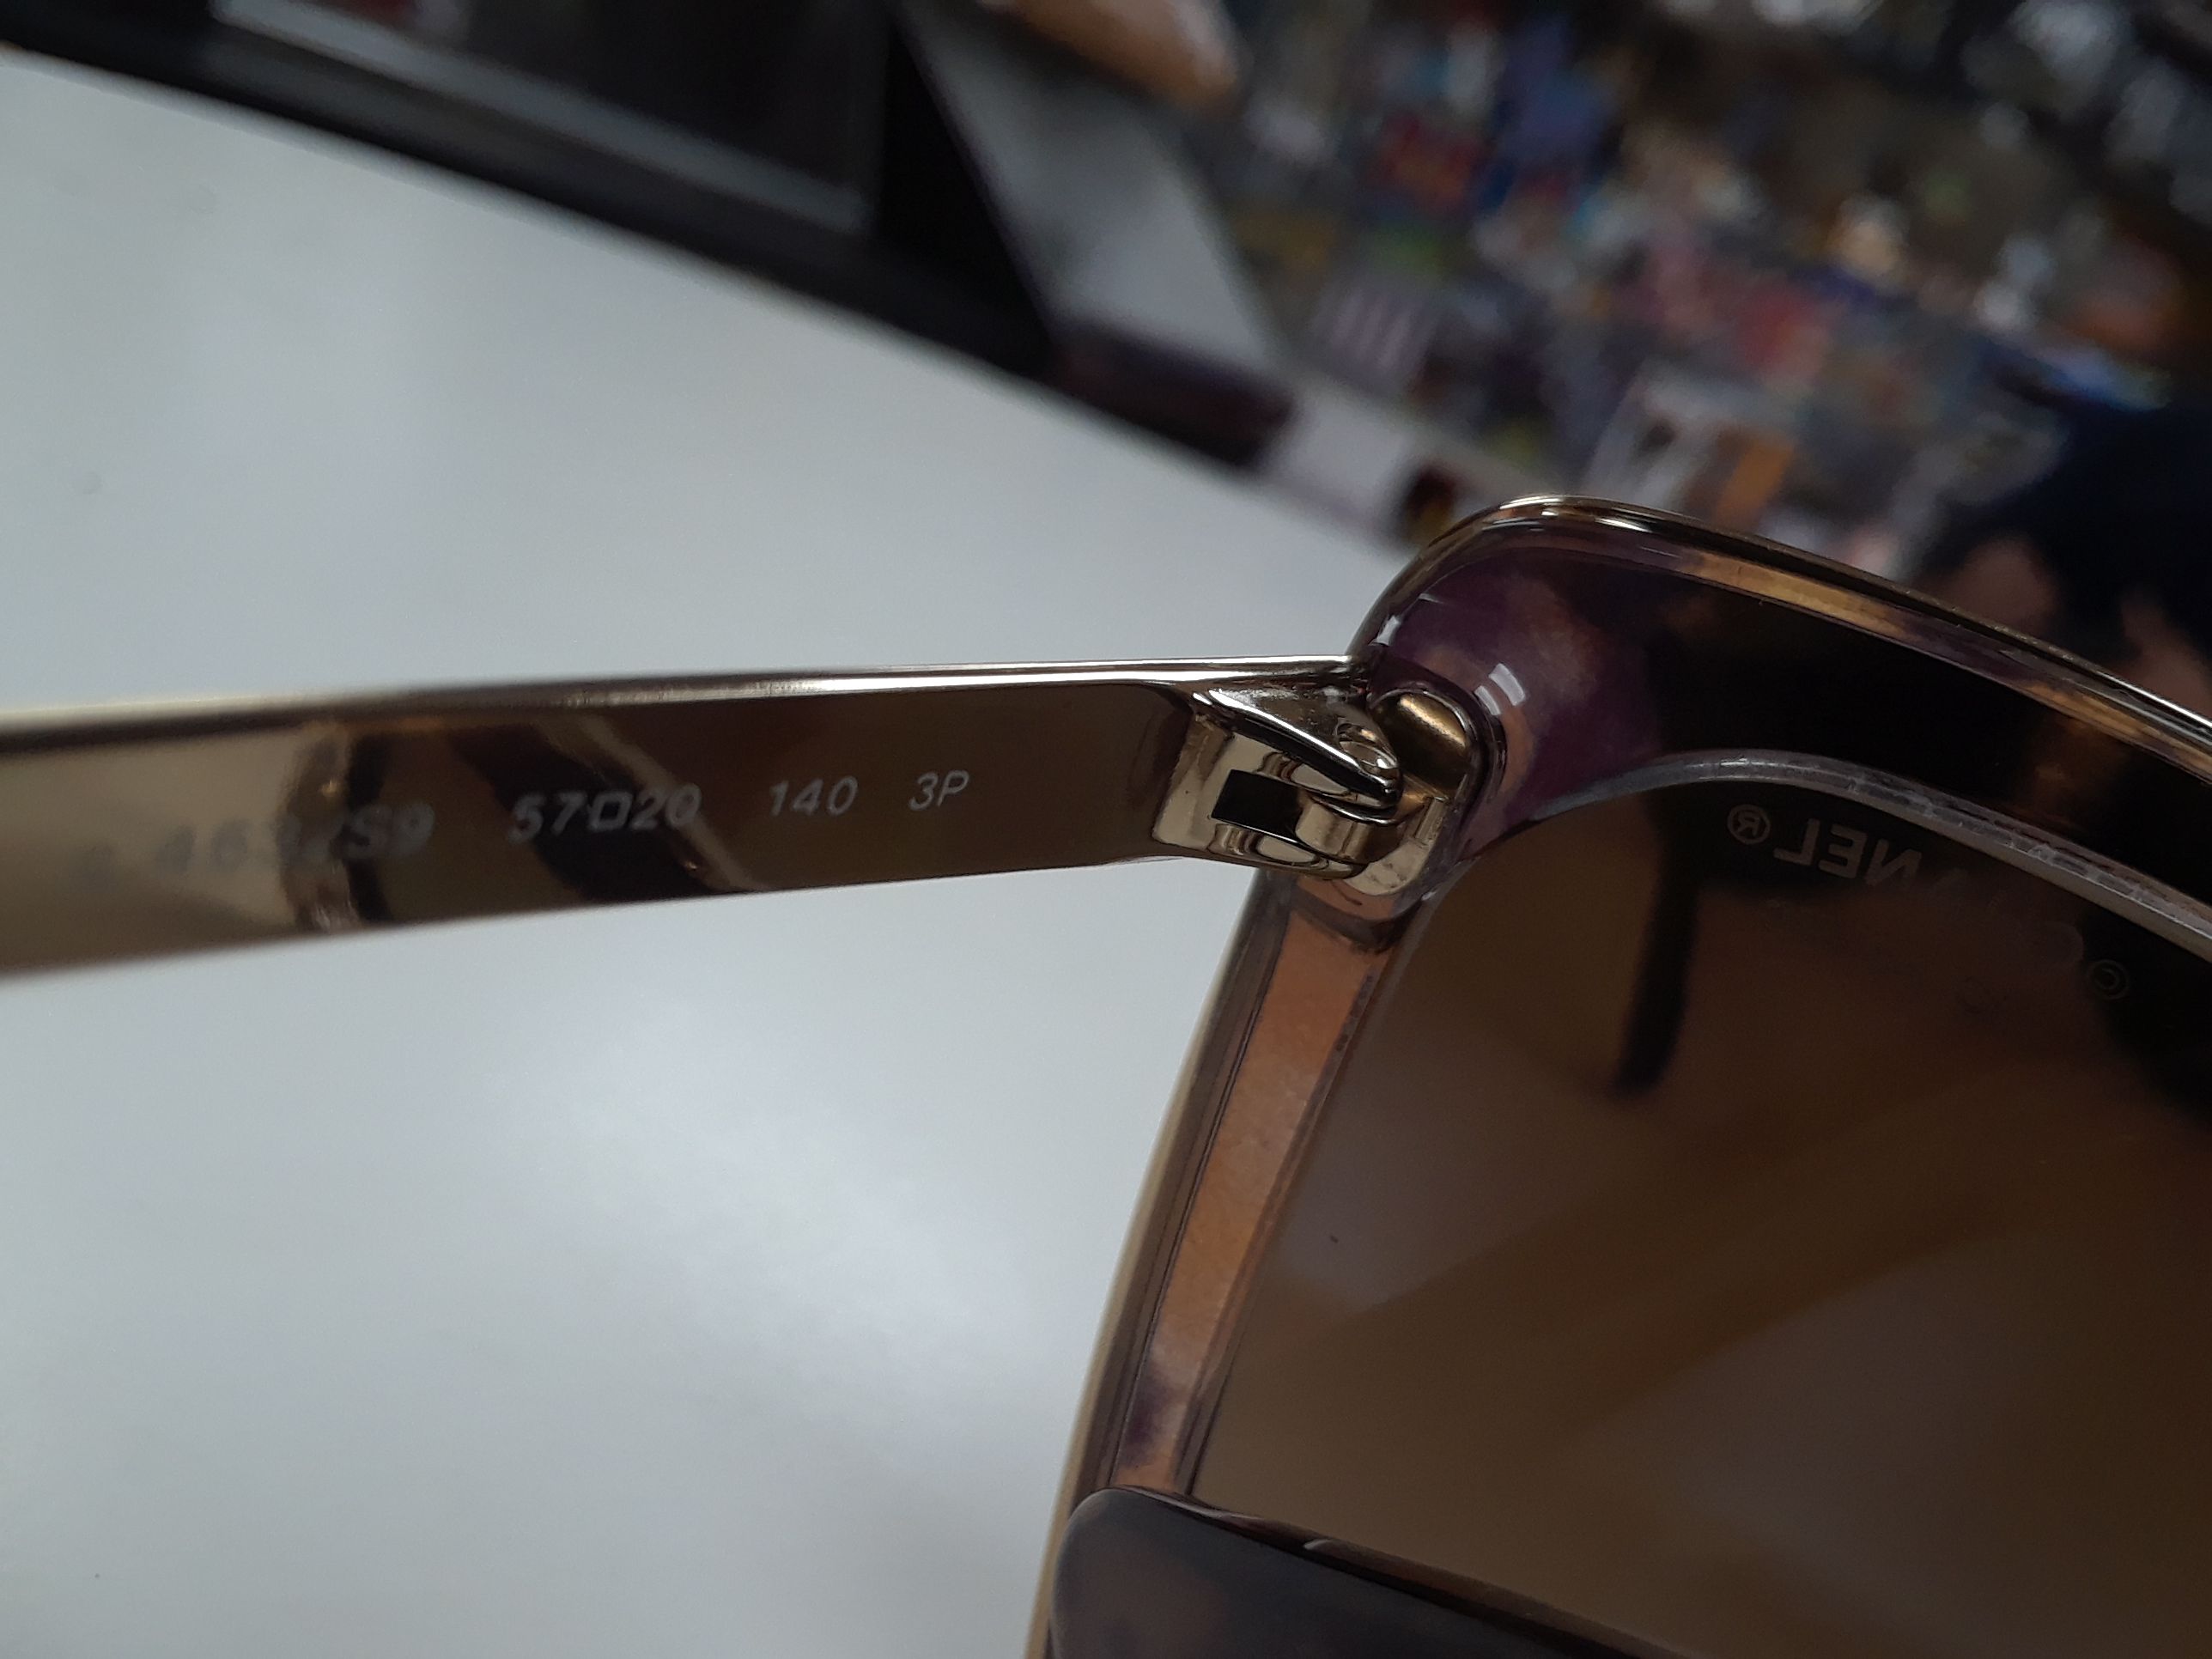 CHANEL Square Fall Polarized Sunglasses 4209 Multicolor Brown for Sale in  Miami, FL - OfferUp